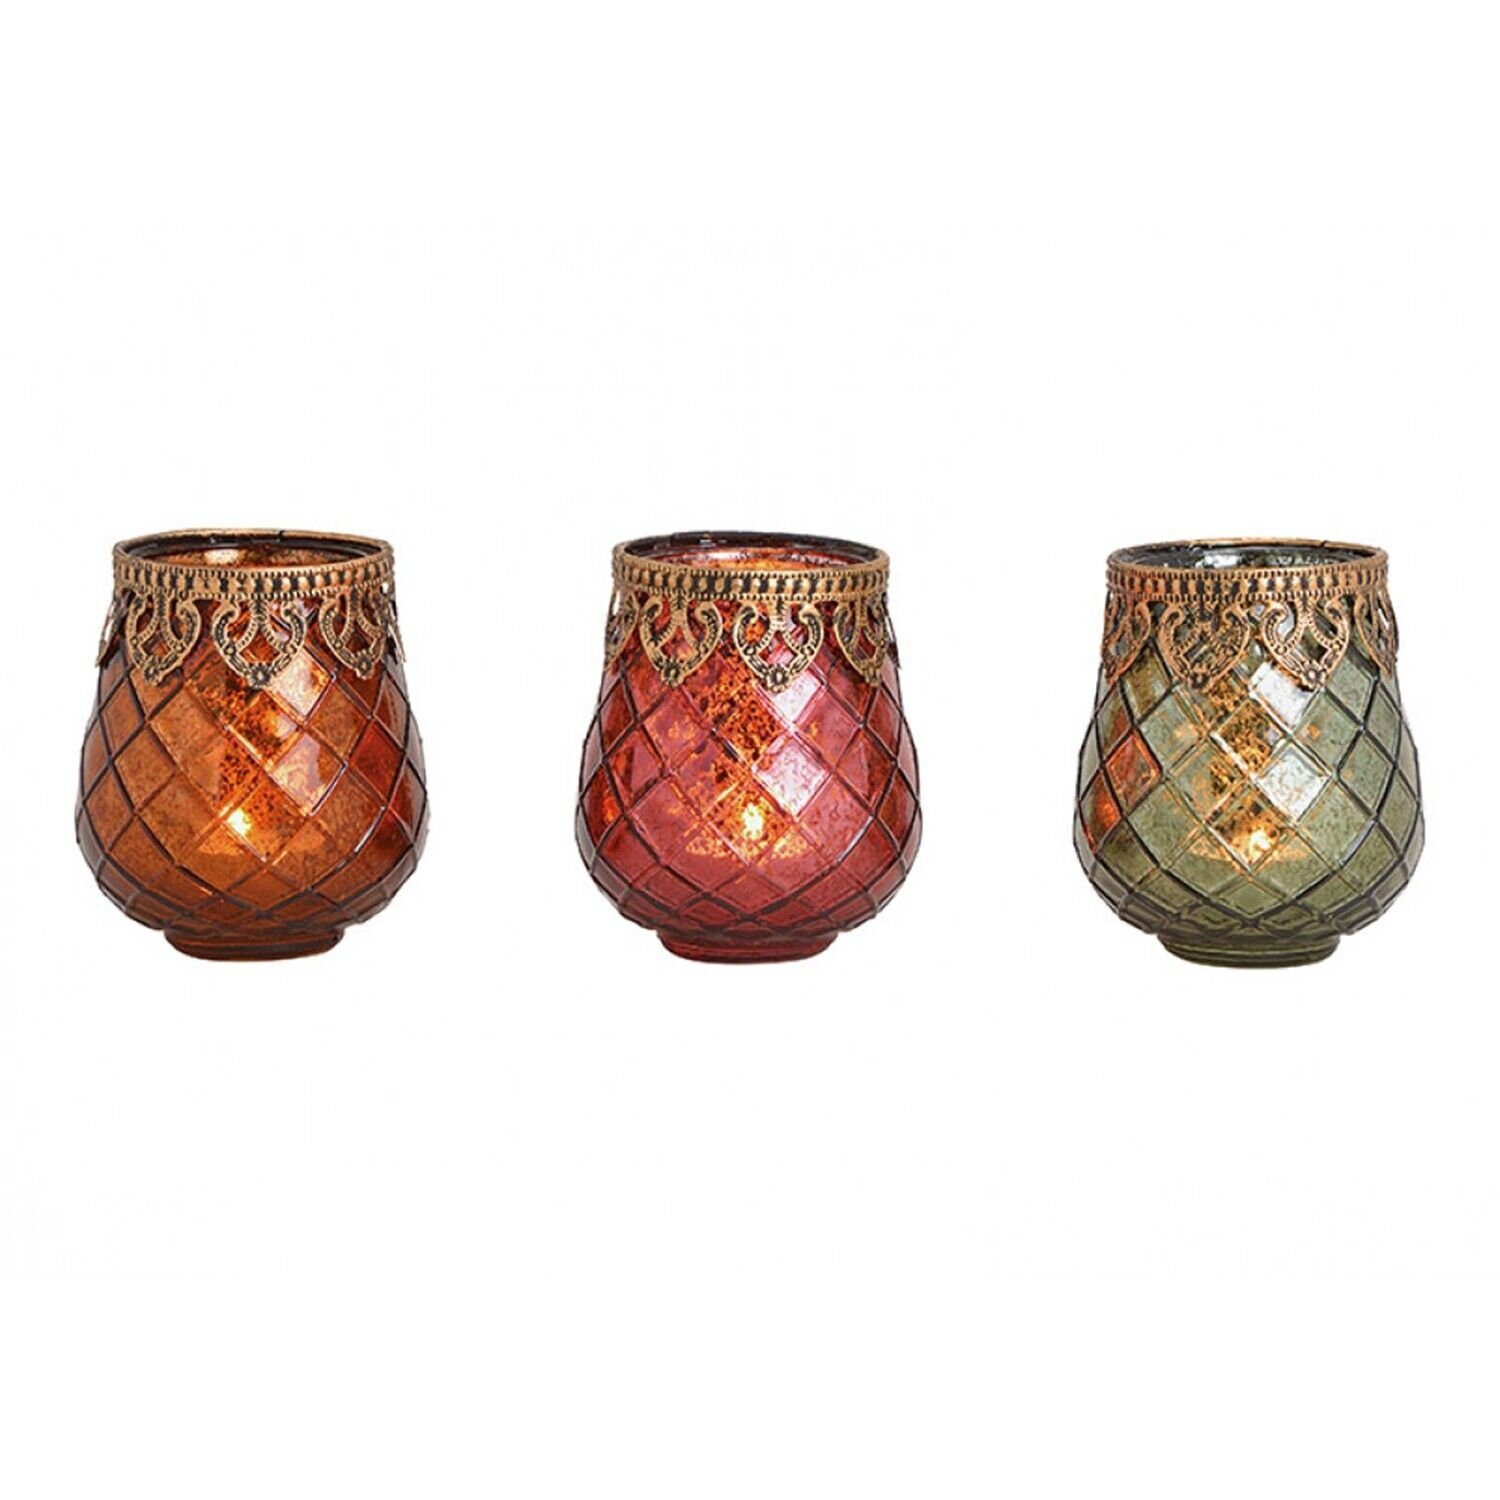 Taschen4life Windlicht Glas Windlicht Indien 602 (3 Stück) (3er Set), orientalische Windlichte, Teelichthalter, Shabby chic & Bohemien Stil Mix rot, orange, grün